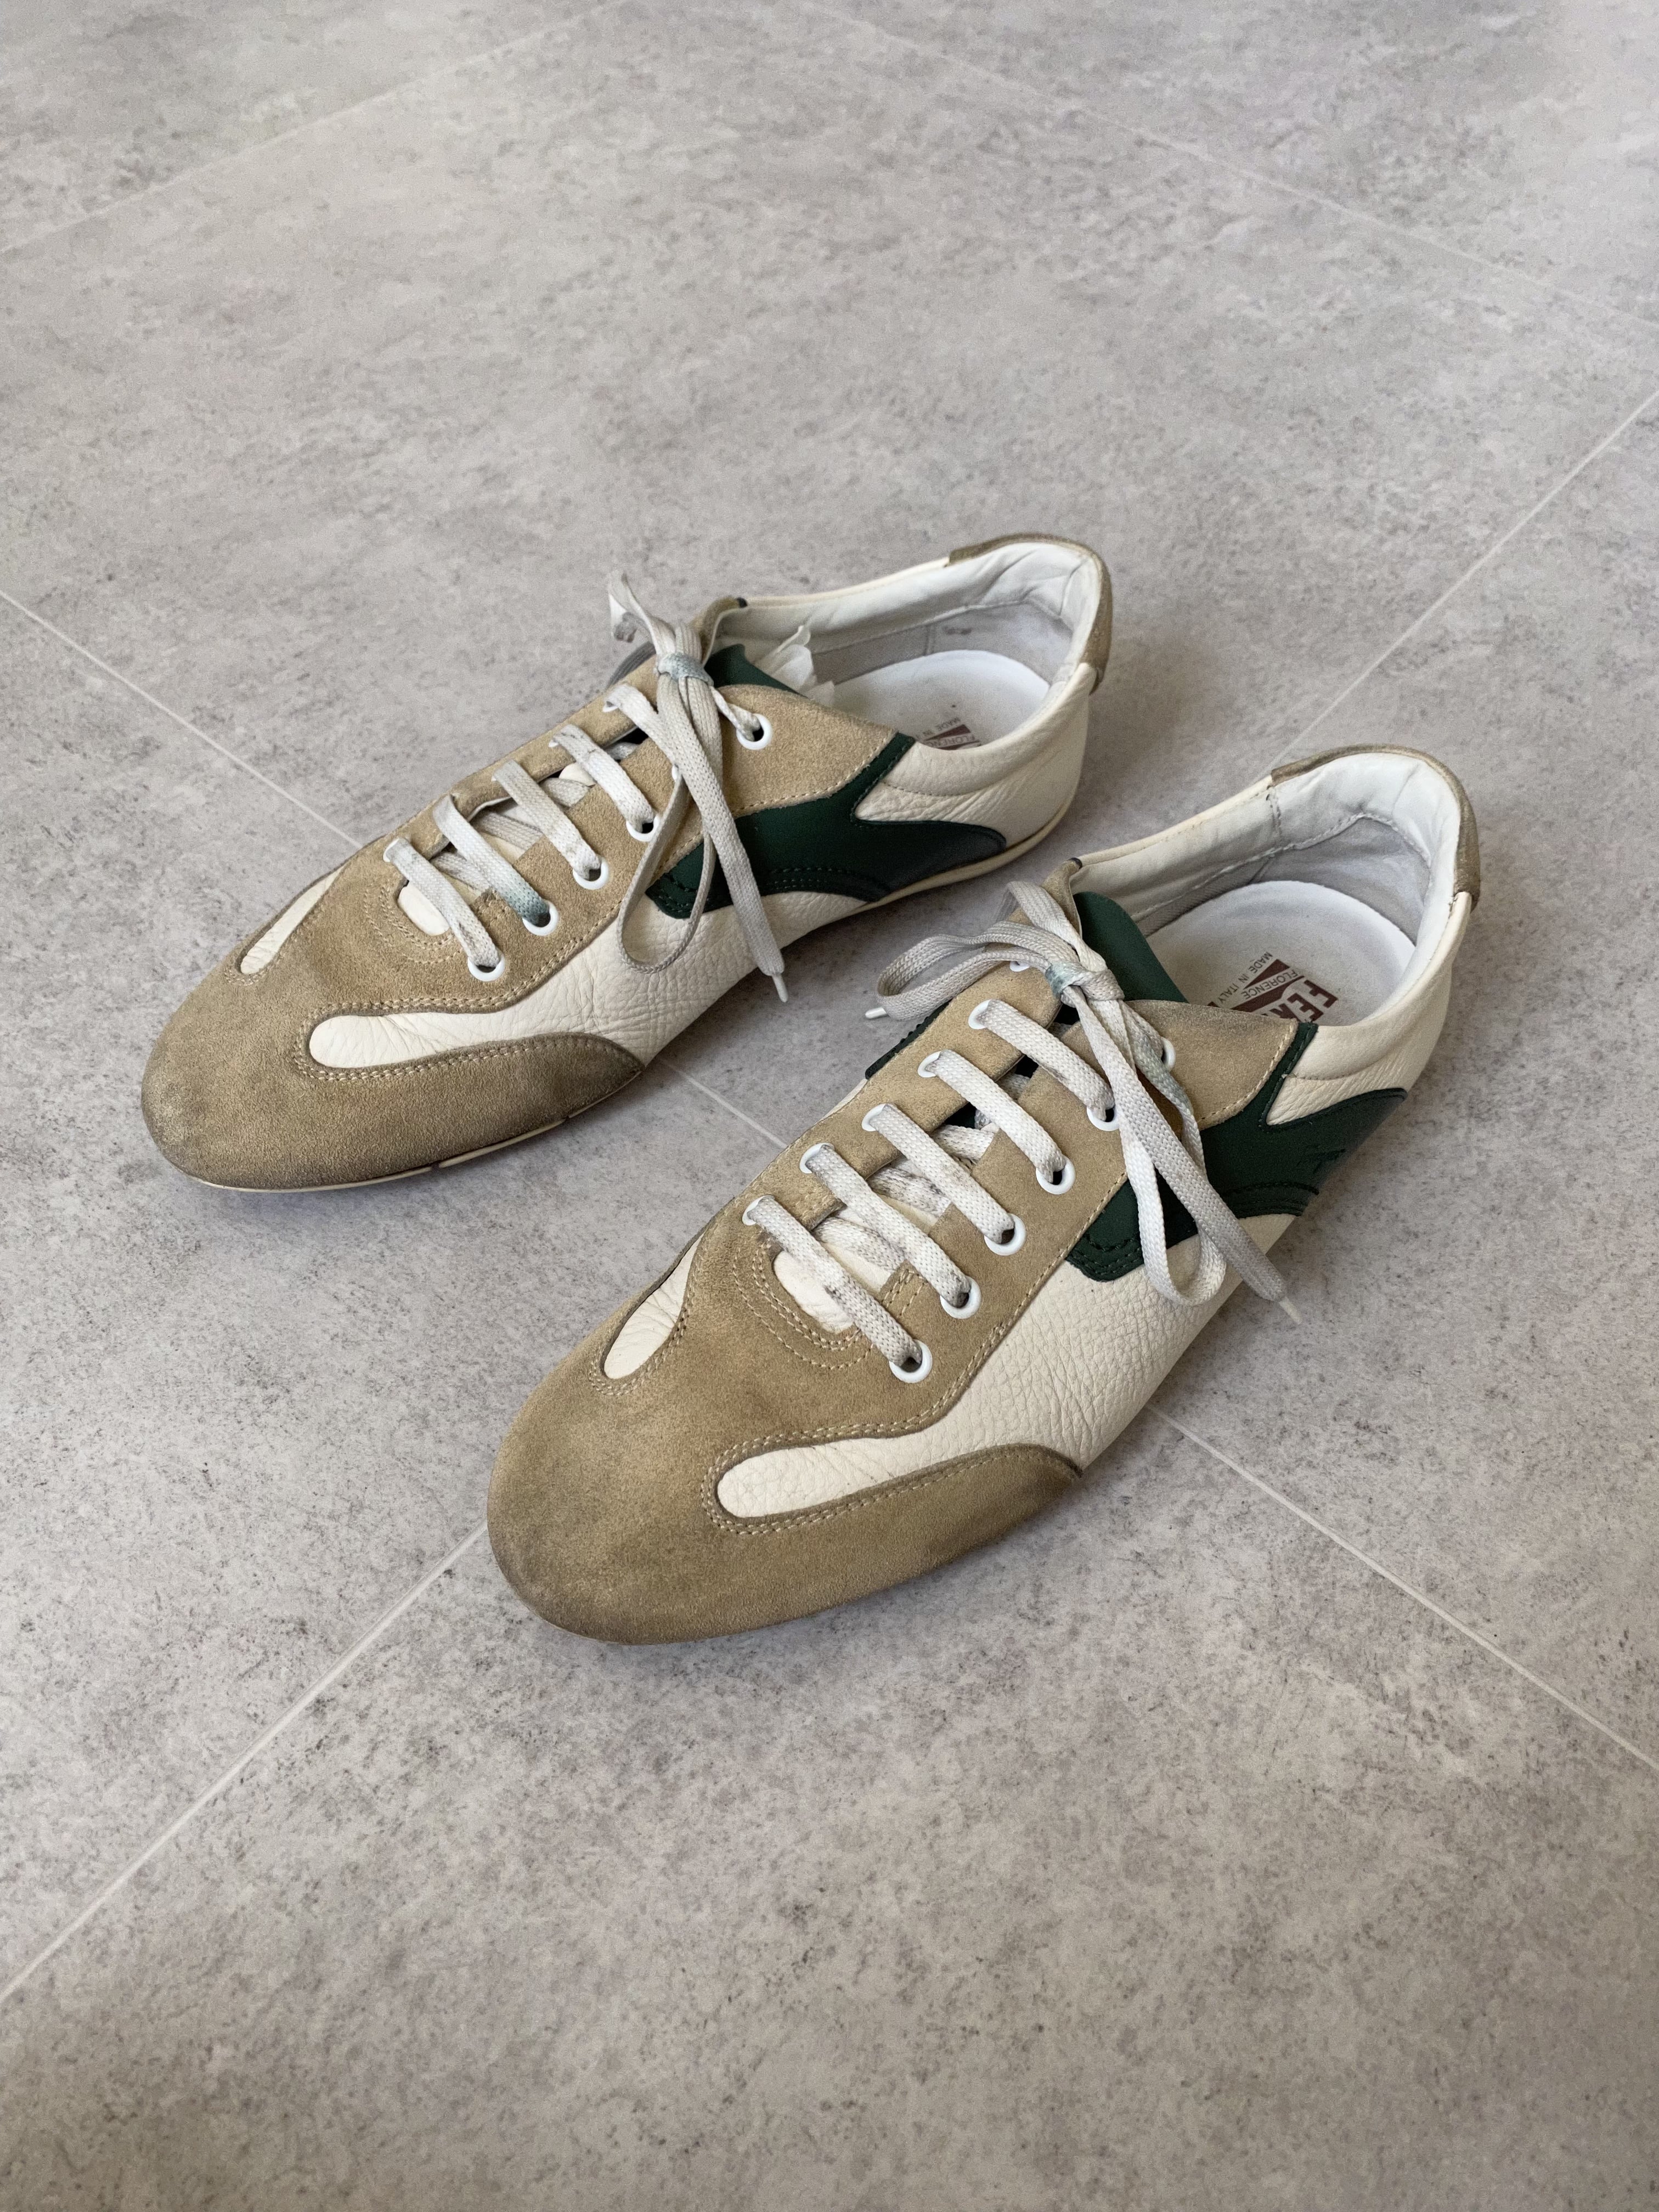 Salvatore Ferragamo Sneakers 280~285 Size - 체리피커